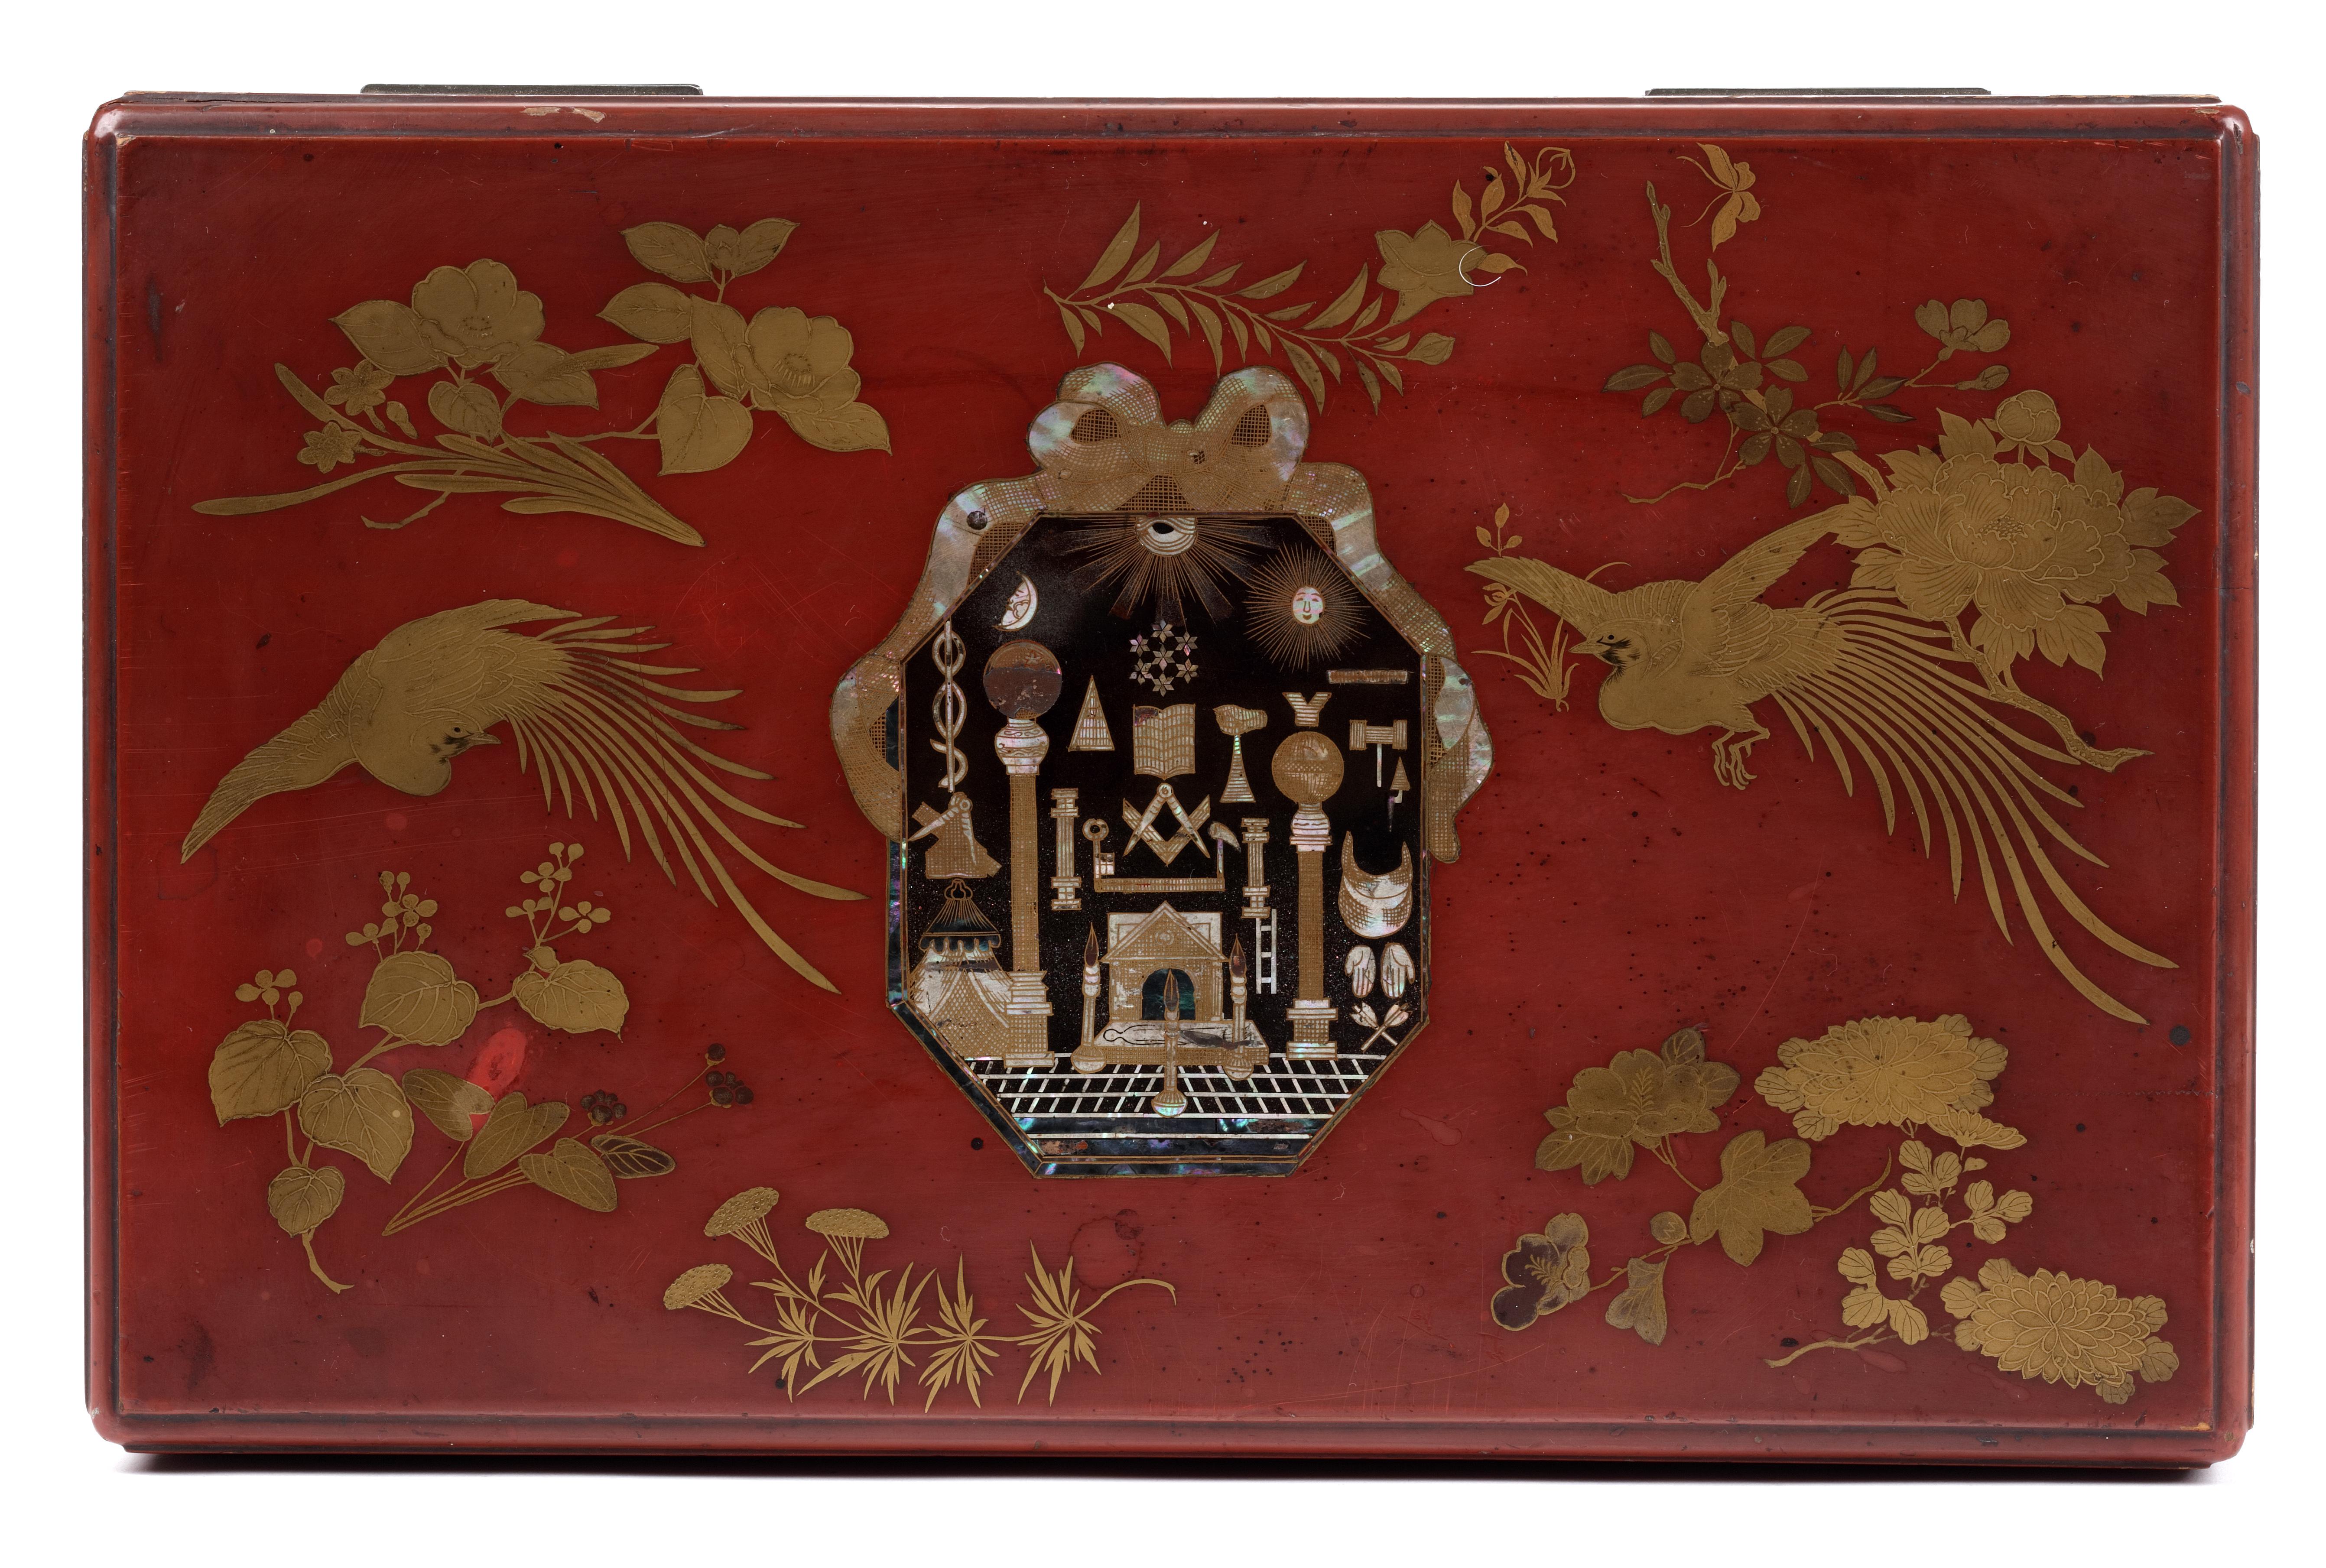 Feine japanische Exportschachtel aus rotem Lack mit freimaurerischen Symbolen

Kyoto/Nagasaki, 1800-1820

Roter Lack, verziert mit Streublumen und fliegenden Vögeln mit langen Schwänzen in Gold, mit dem Freimaurer-Emblem in Perlmutt auf